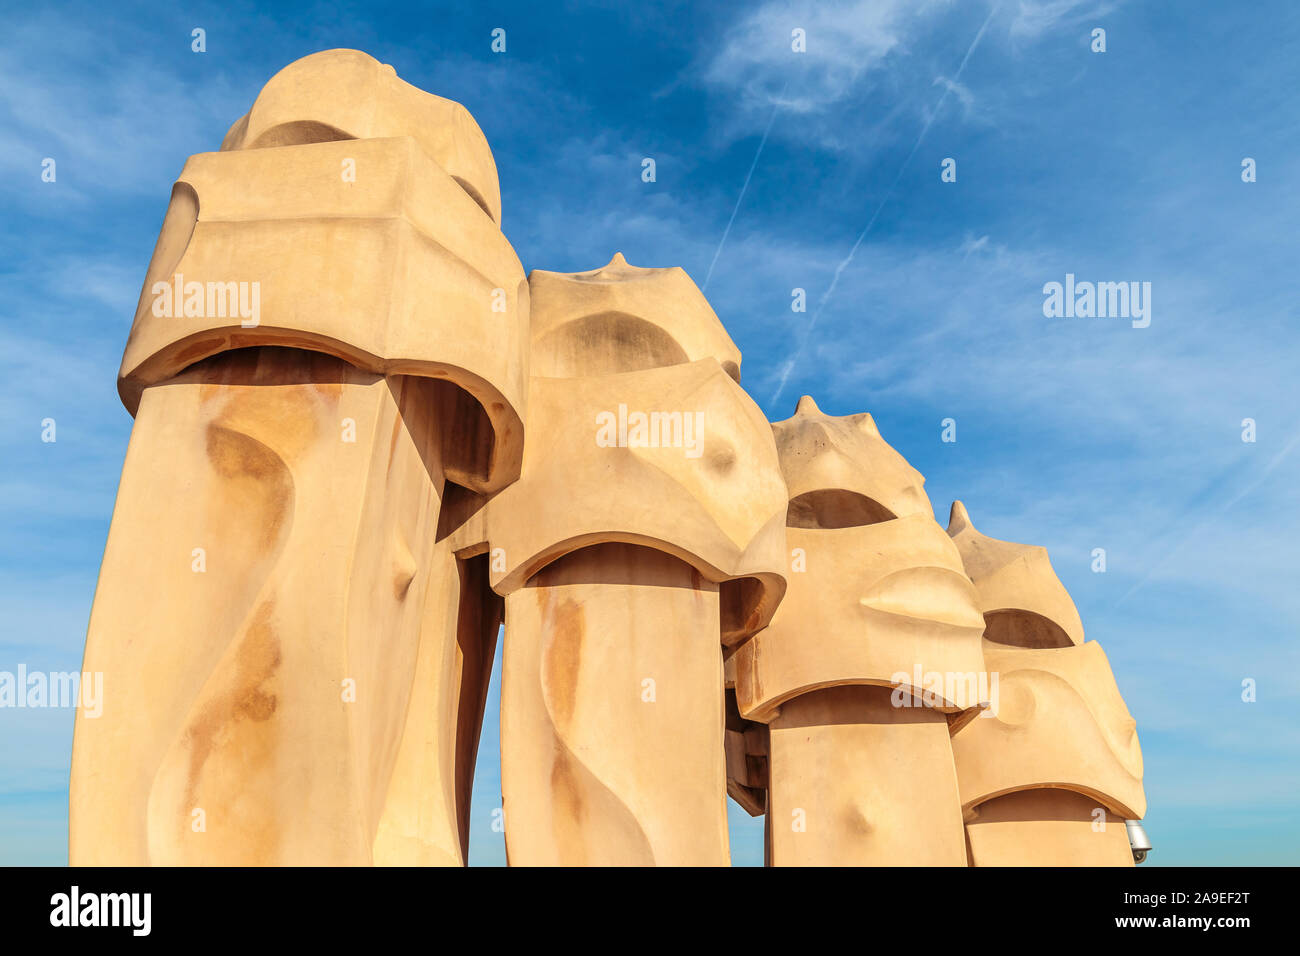 Animaux ressemblant à des cheminées Gaudi contre le ciel bleu avec petite quantité de nuages Banque D'Images